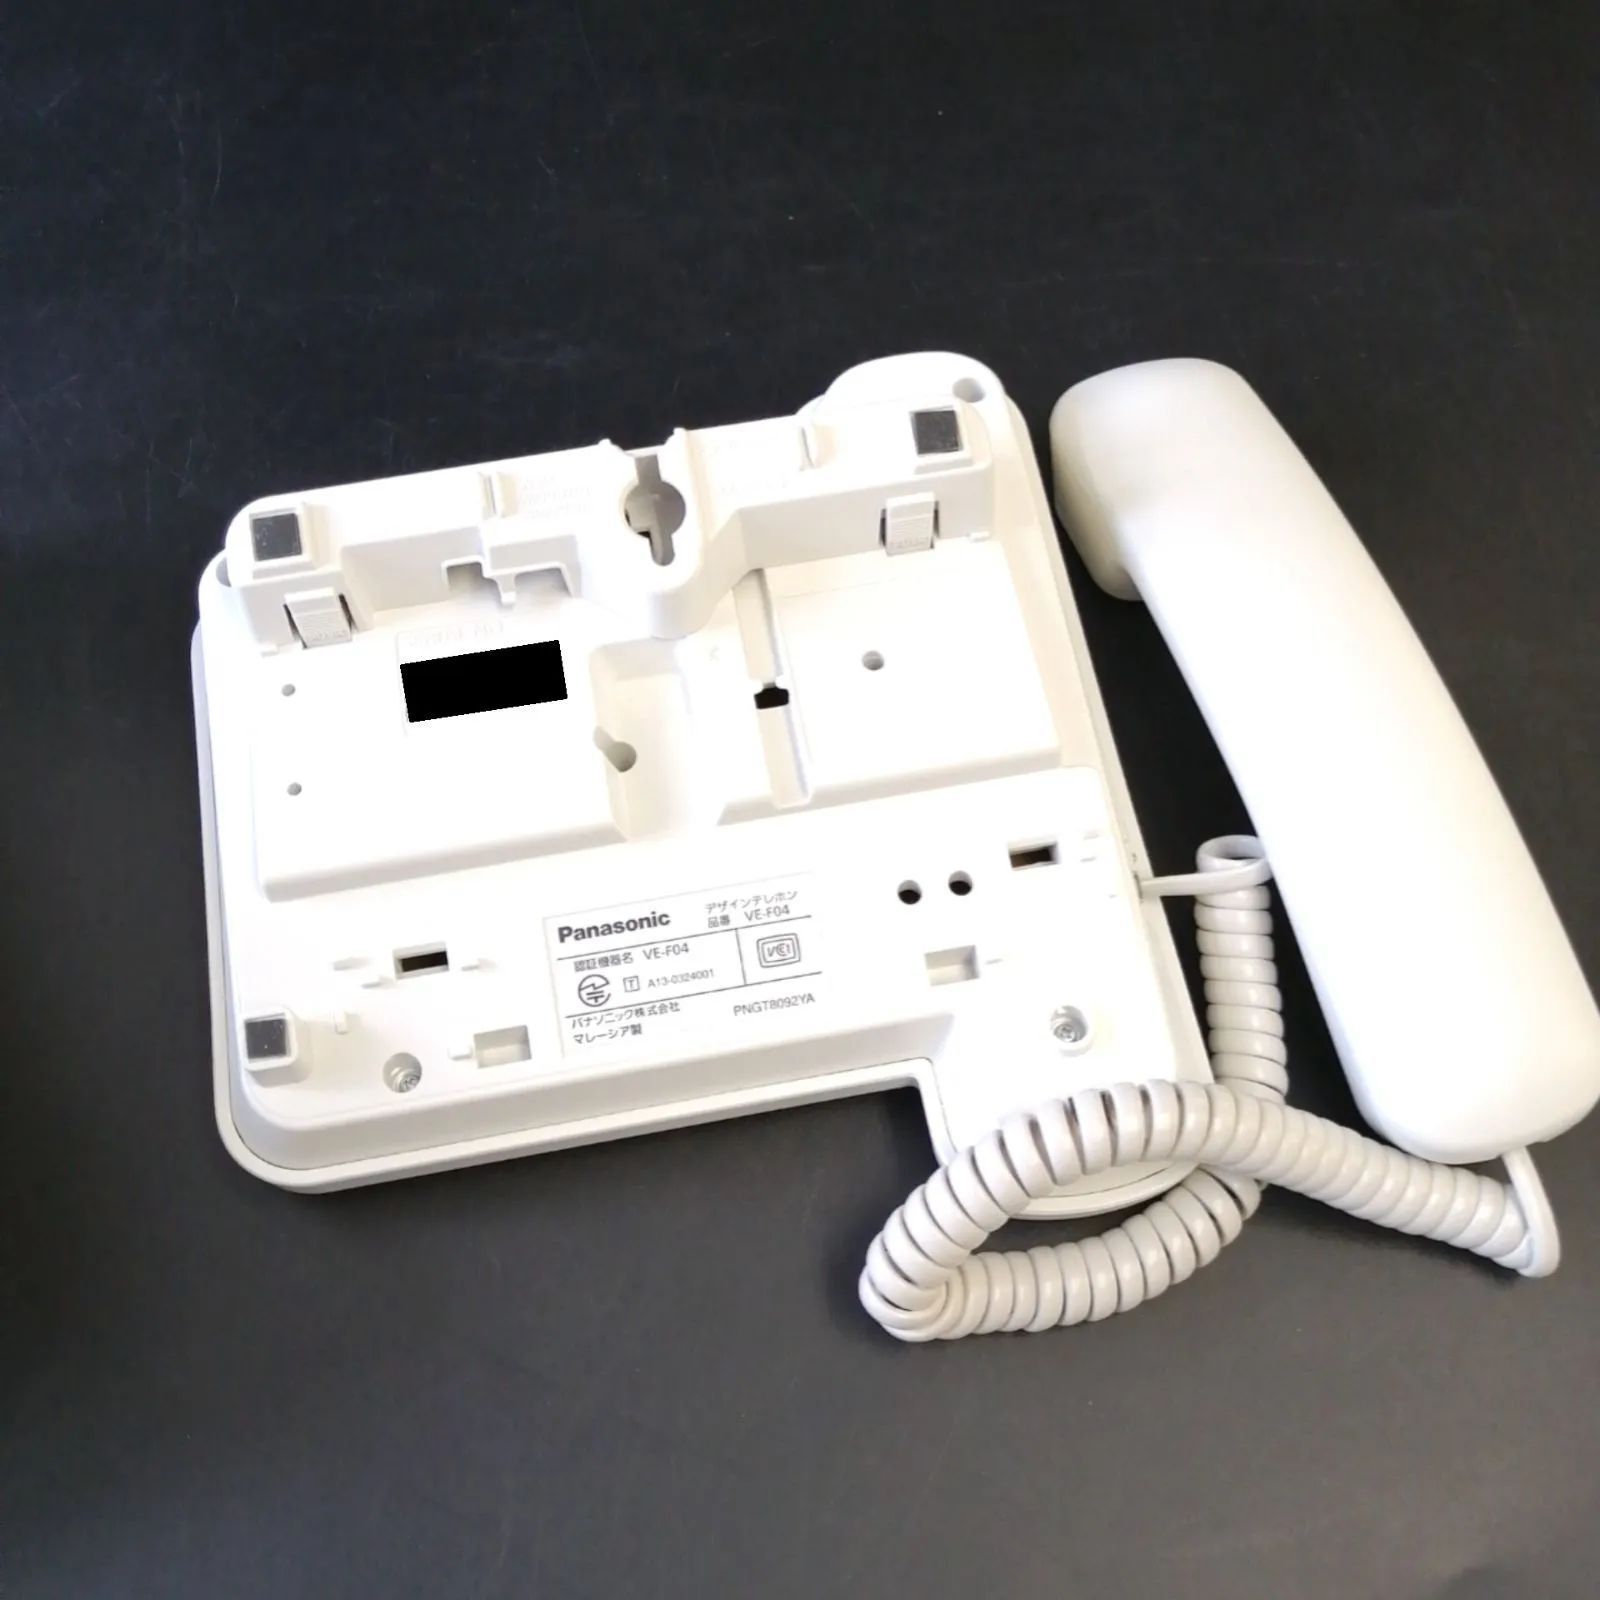 パナソニック Panasonic デザインテレホン ホワイト 電話機 VE-F04-W 着信ランプ 再ダイヤル キャッチホン ワンタッチダイヤル  0203213 - メルカリ